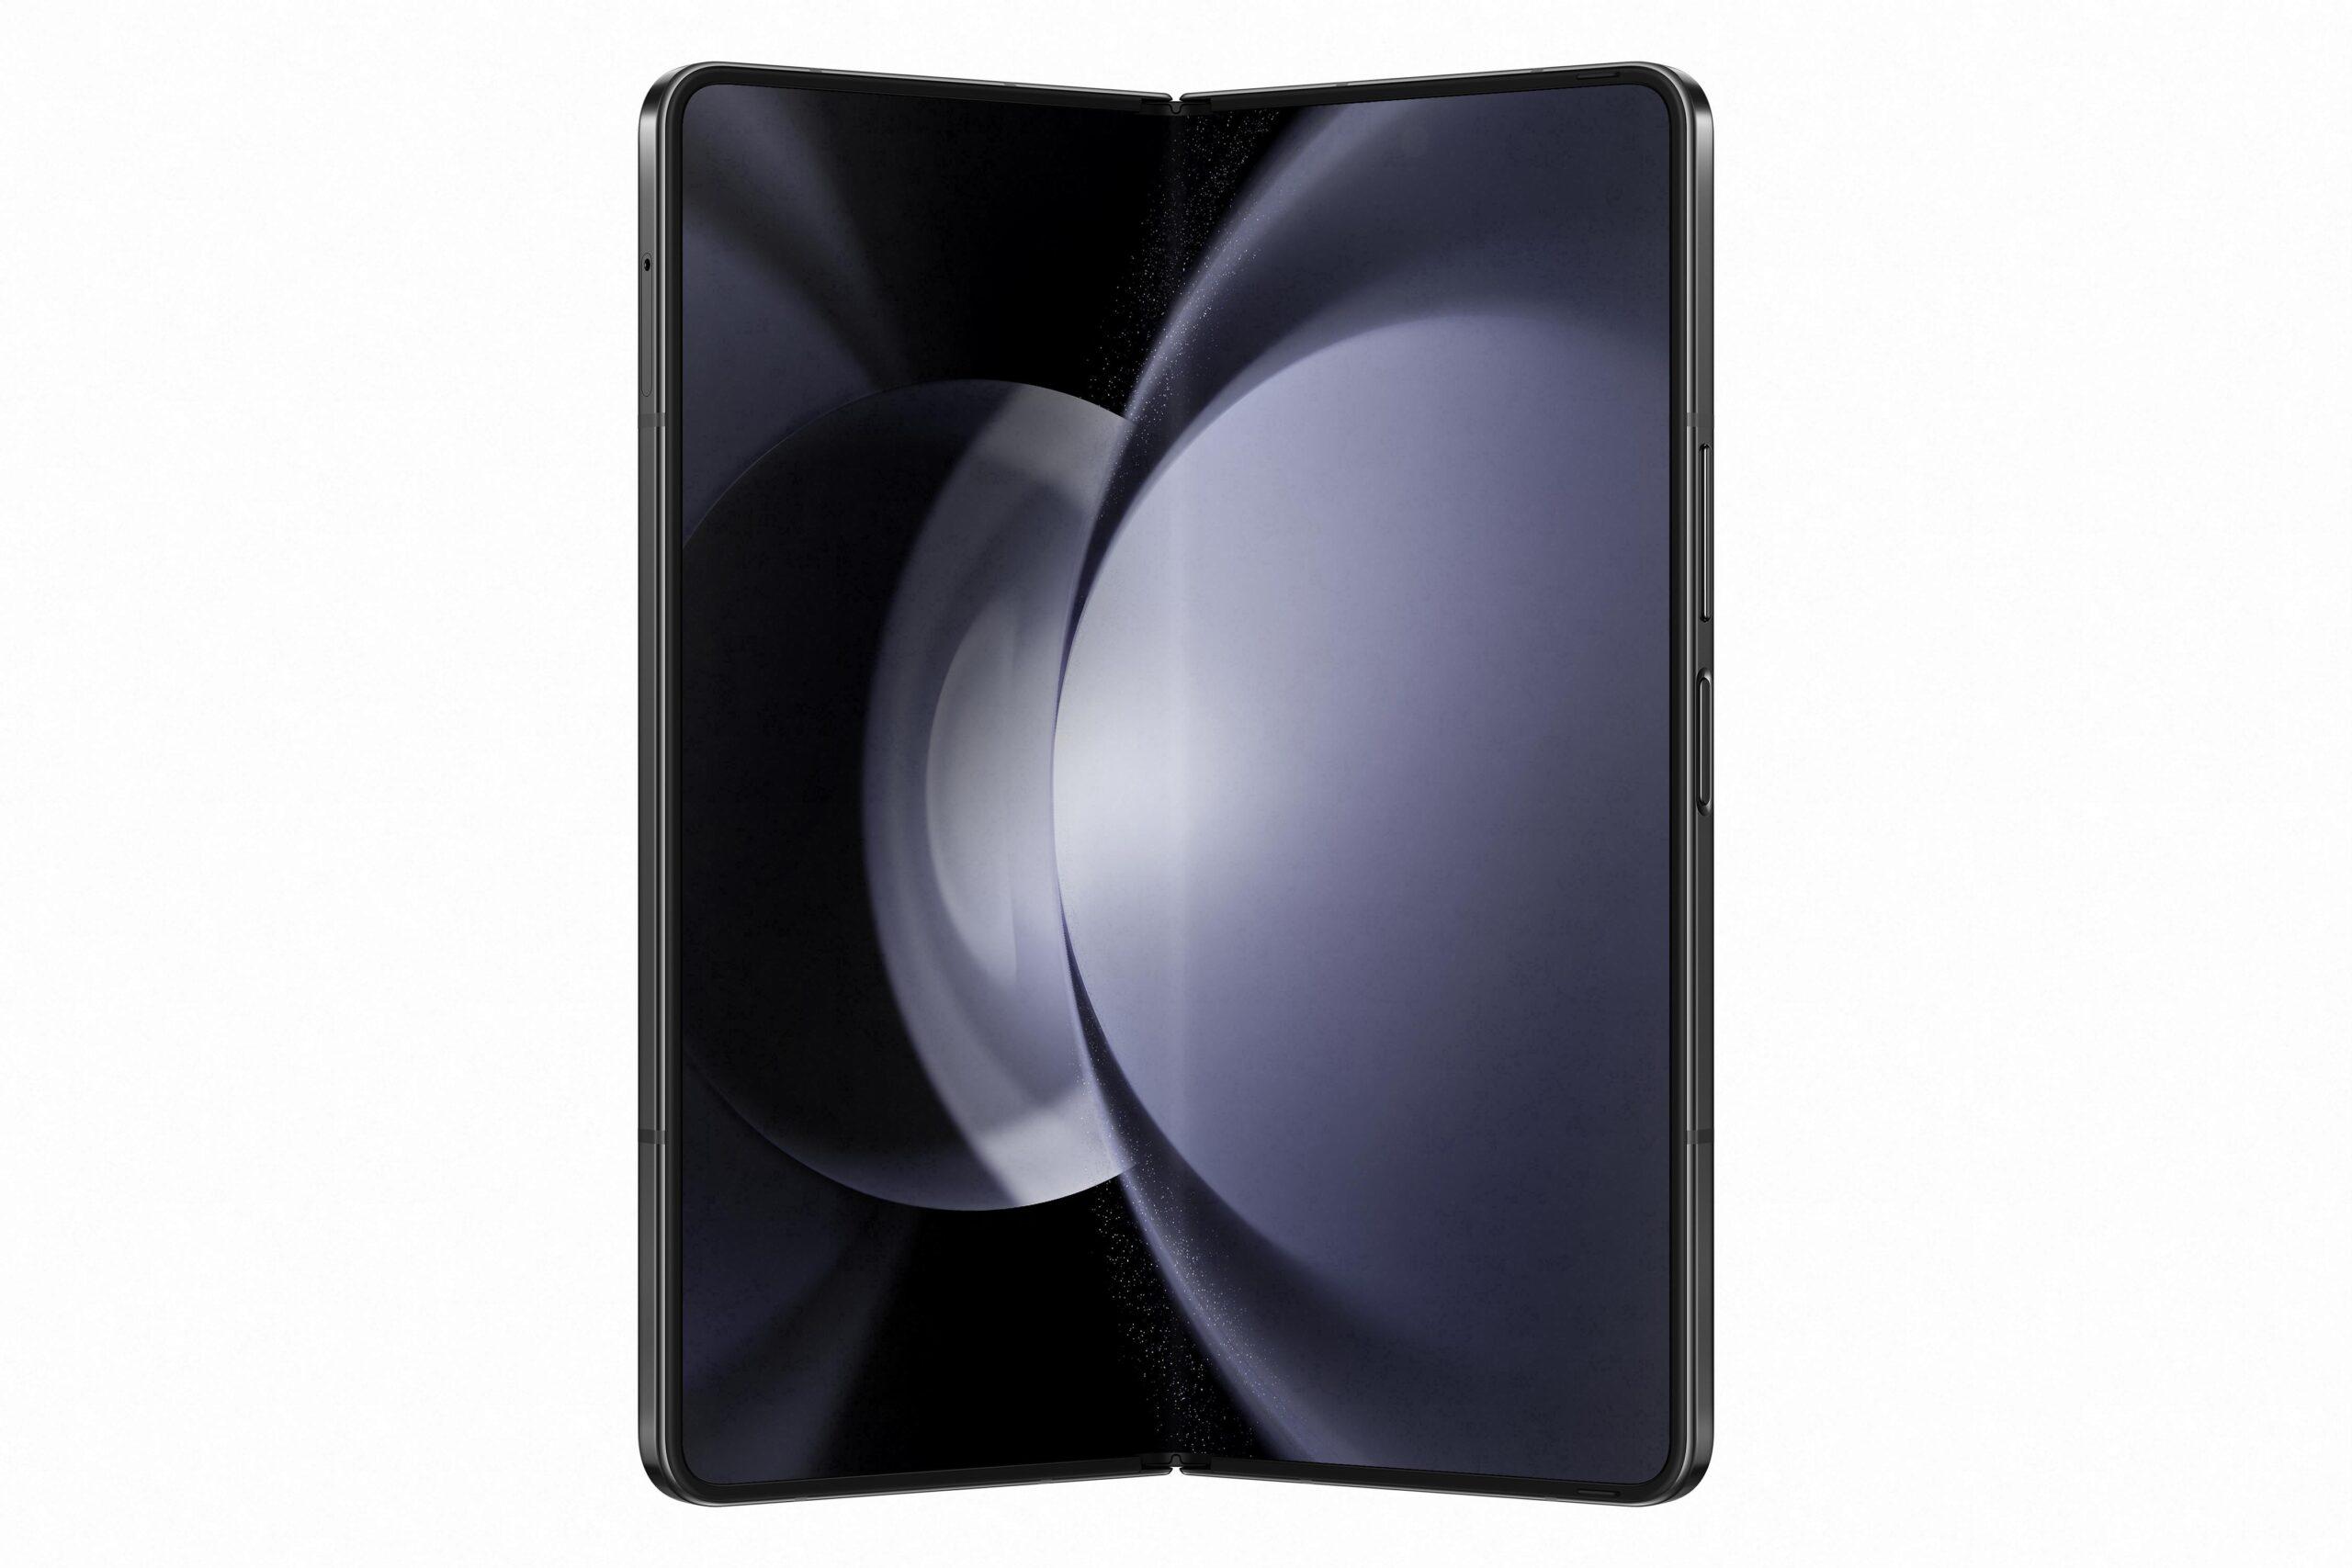 سامسونج جالاكسي زد فولد 5 حزمة بريميوم مع سماعة جالاكسي بودز 2 برو وكفر للجوال والسماعة Samsung Galaxy Z Fold5 5G Premium Edition - cG9zdDoxNDQ1MDk2